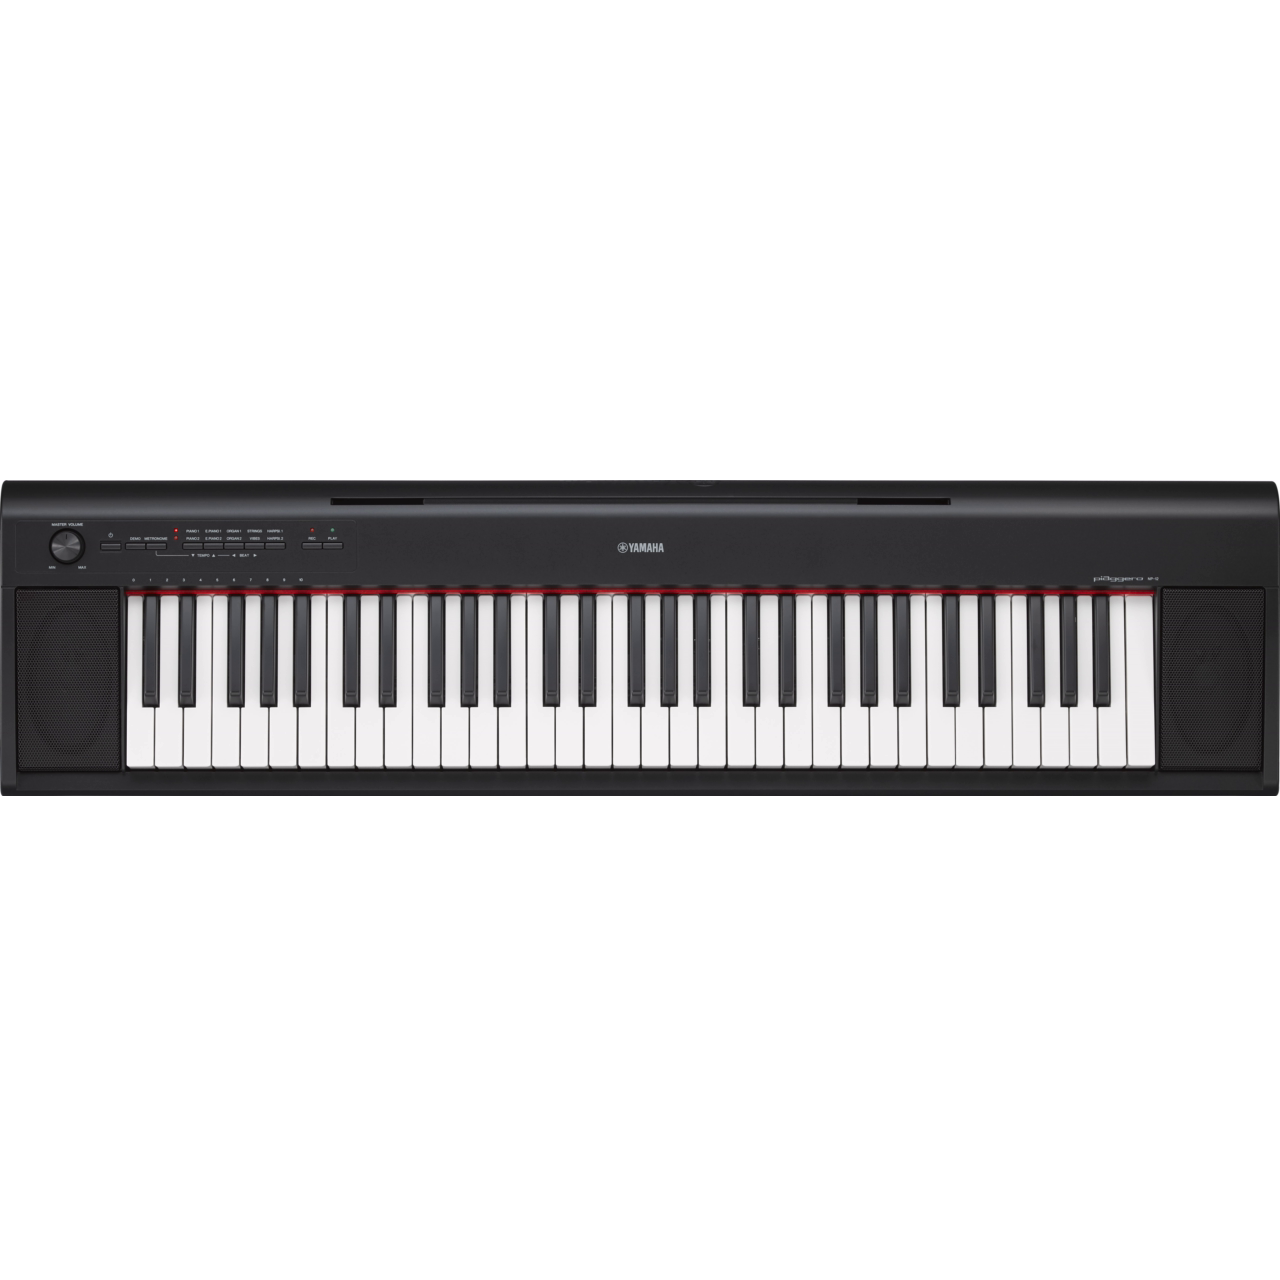 Yamaha NP12 Piaggero Digital Piano - Black - New